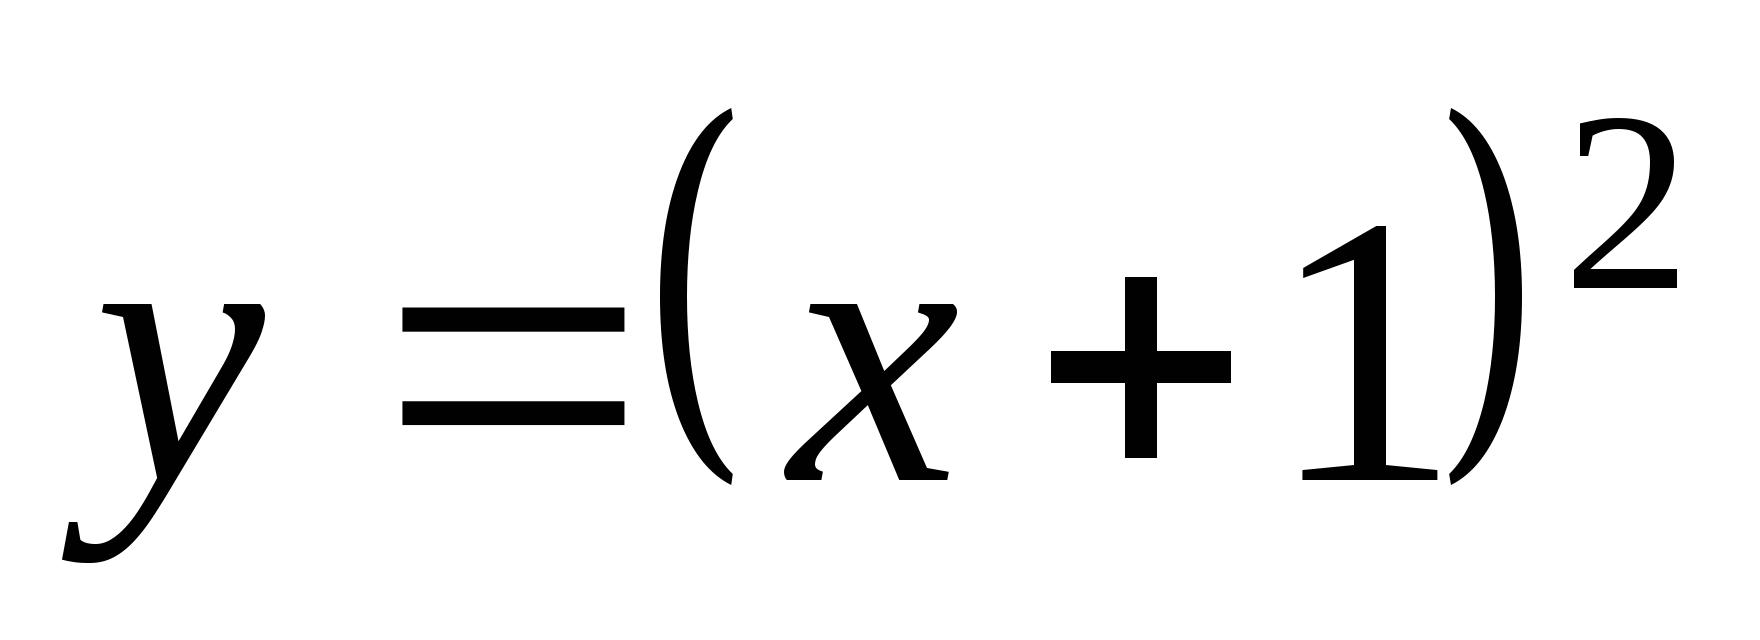 Урок по алгебре на тему Простейшие преобразования графиков функций